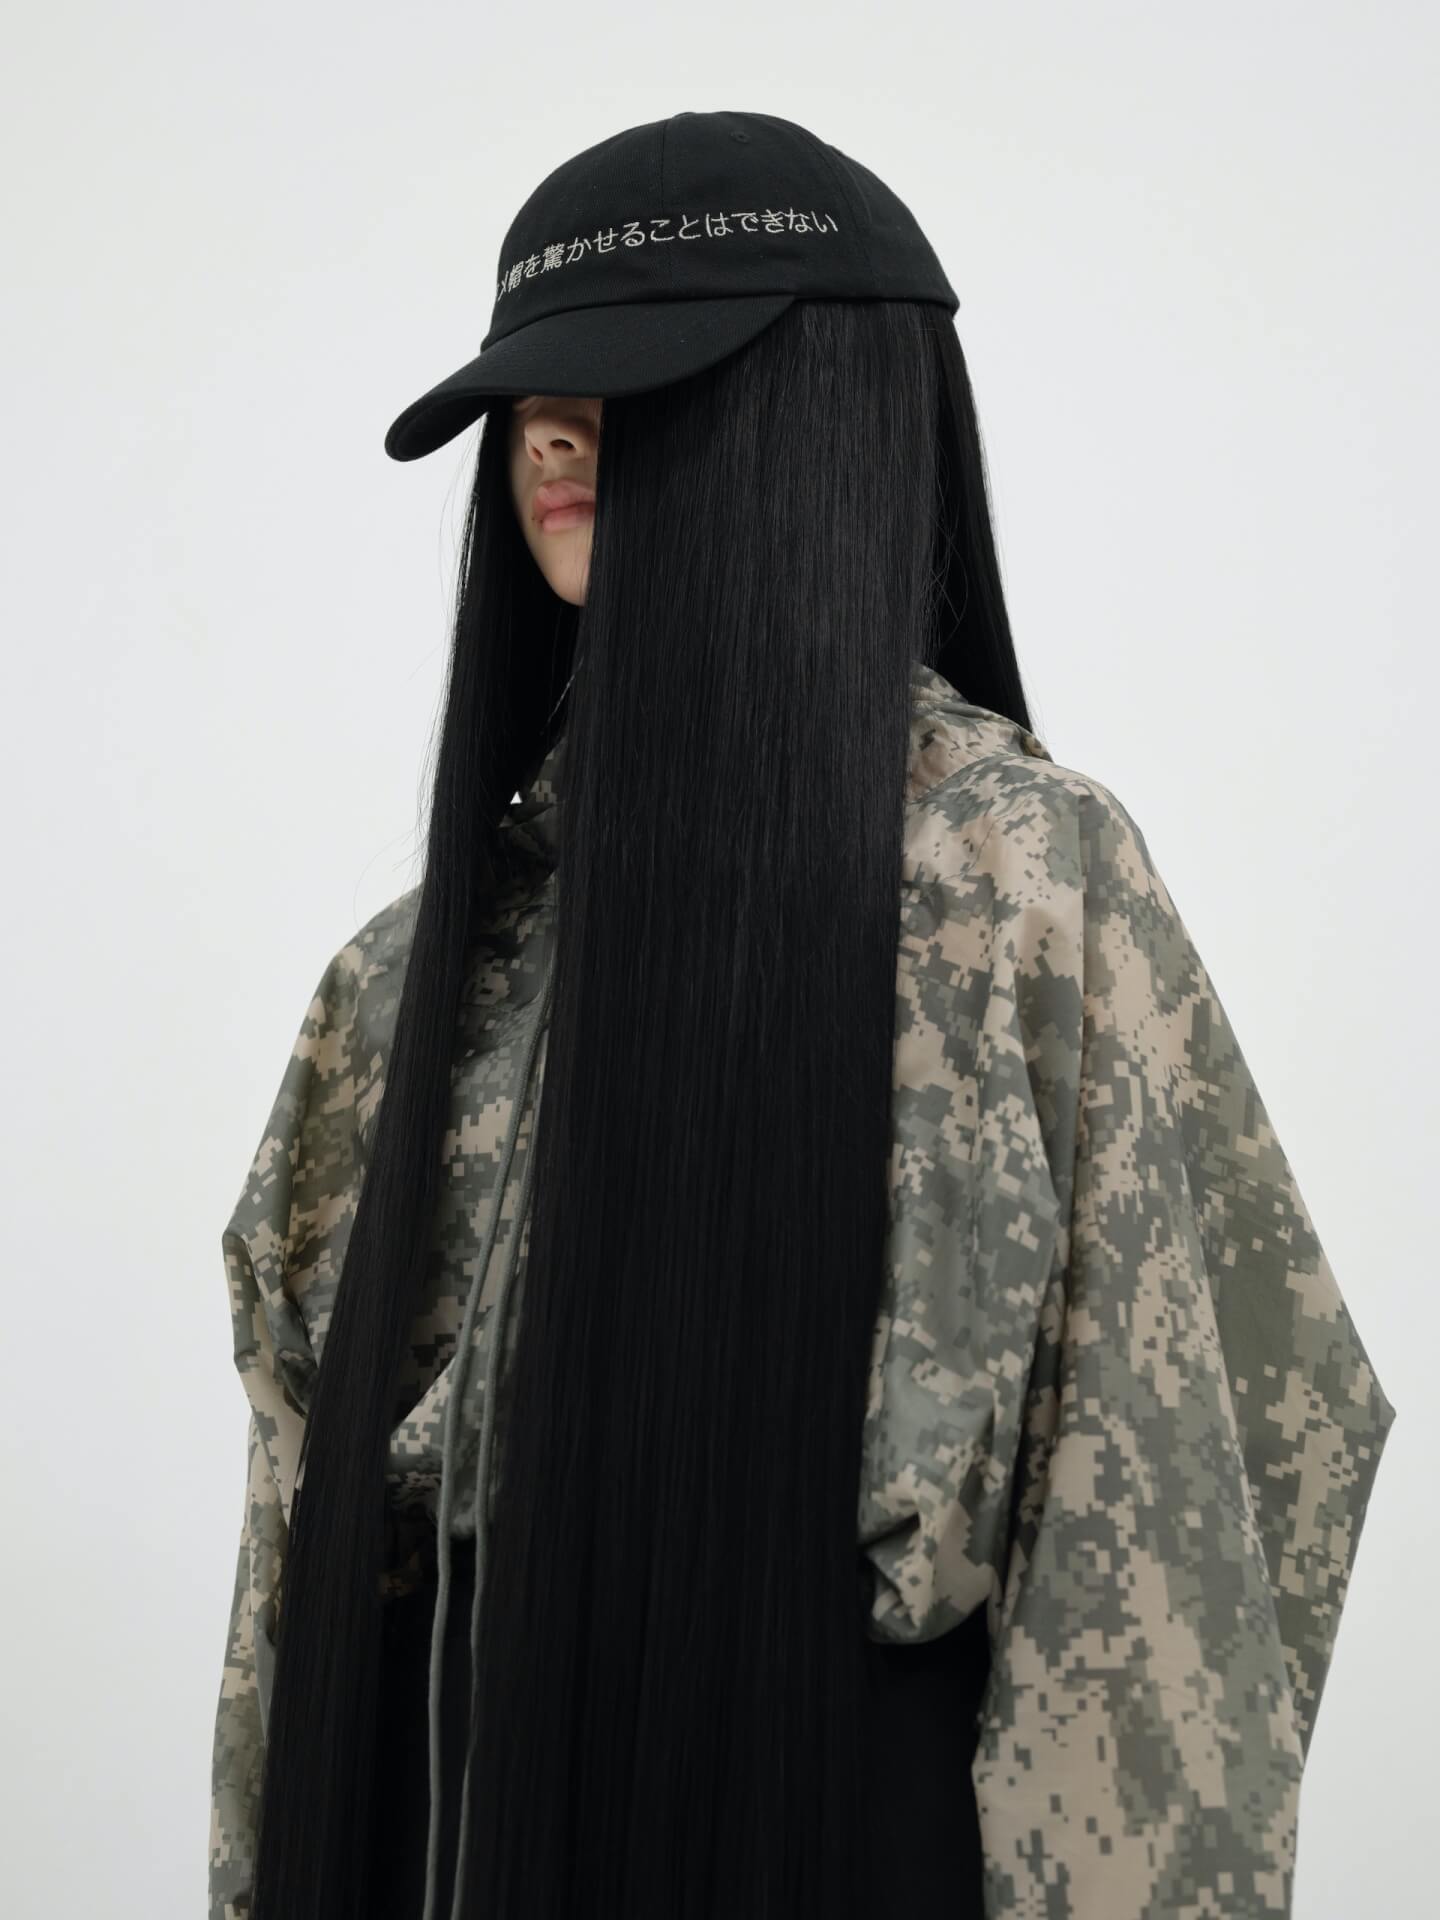 ヌケメのECサイトにてイメージを一新した「ヌケメ帽2」が発売！ルックも公開中 Fashion_210712_nukeme3